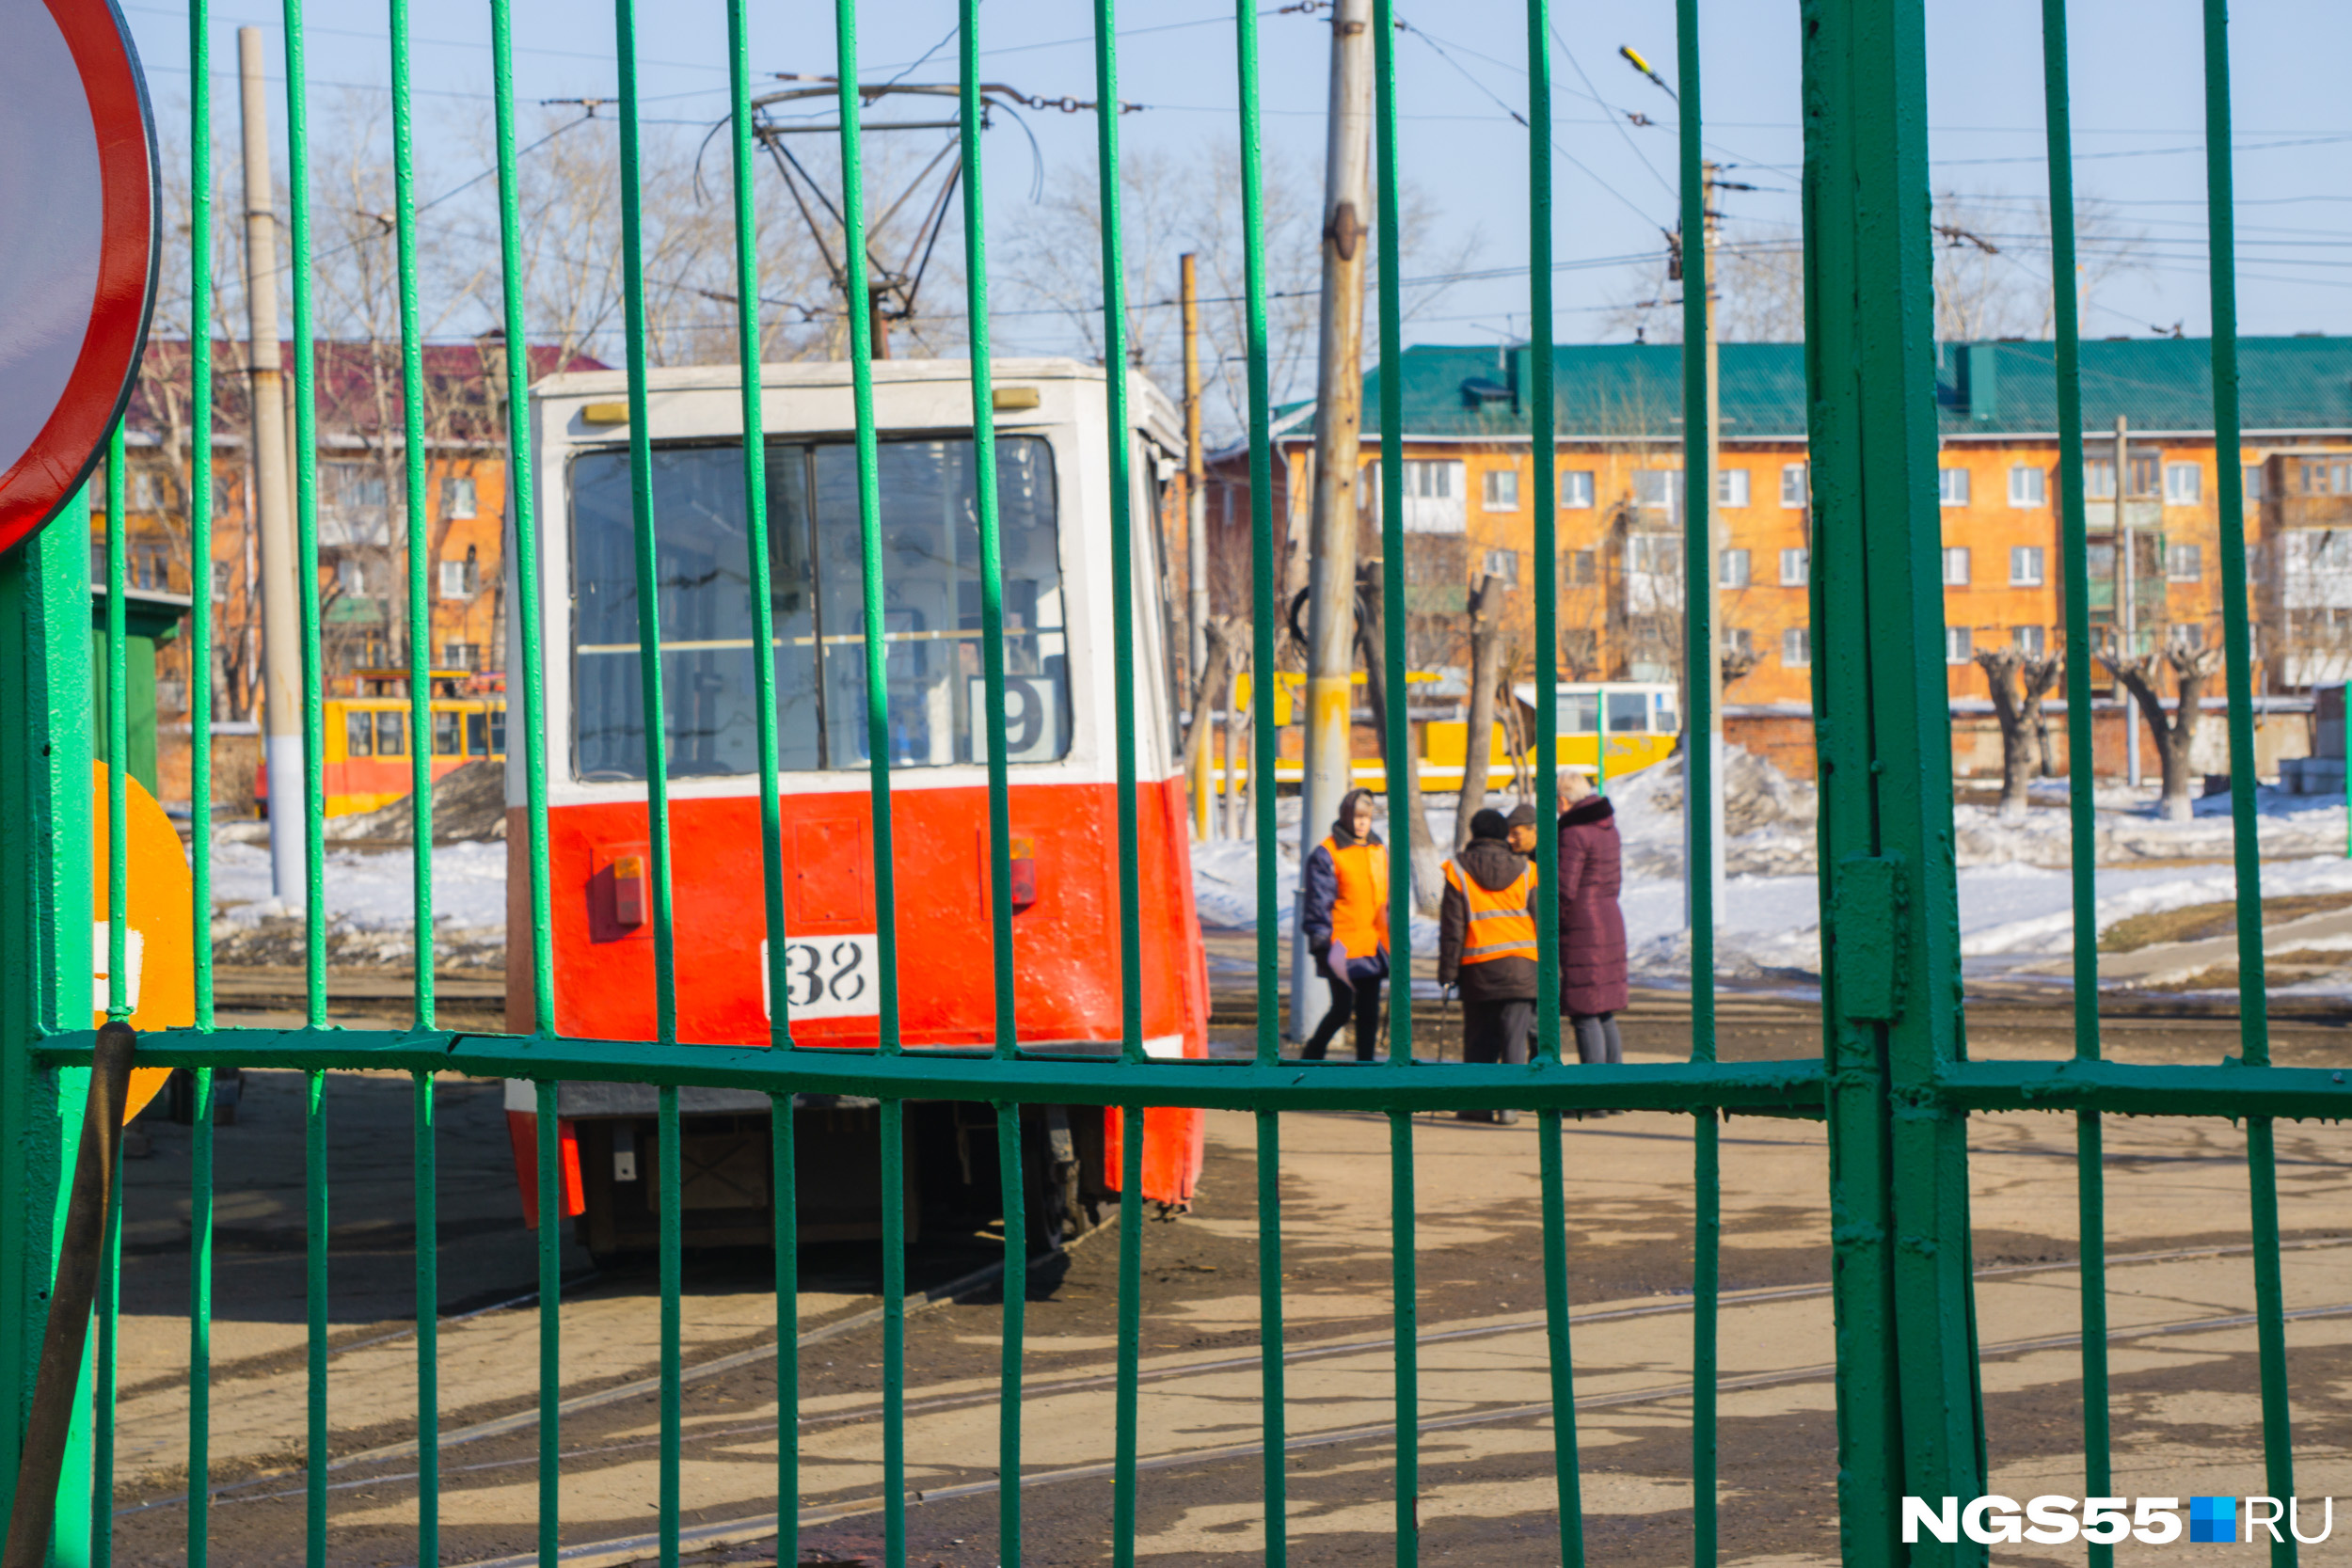 Ирина считает трамвайное депо одним из своих самых любимых мест в городе